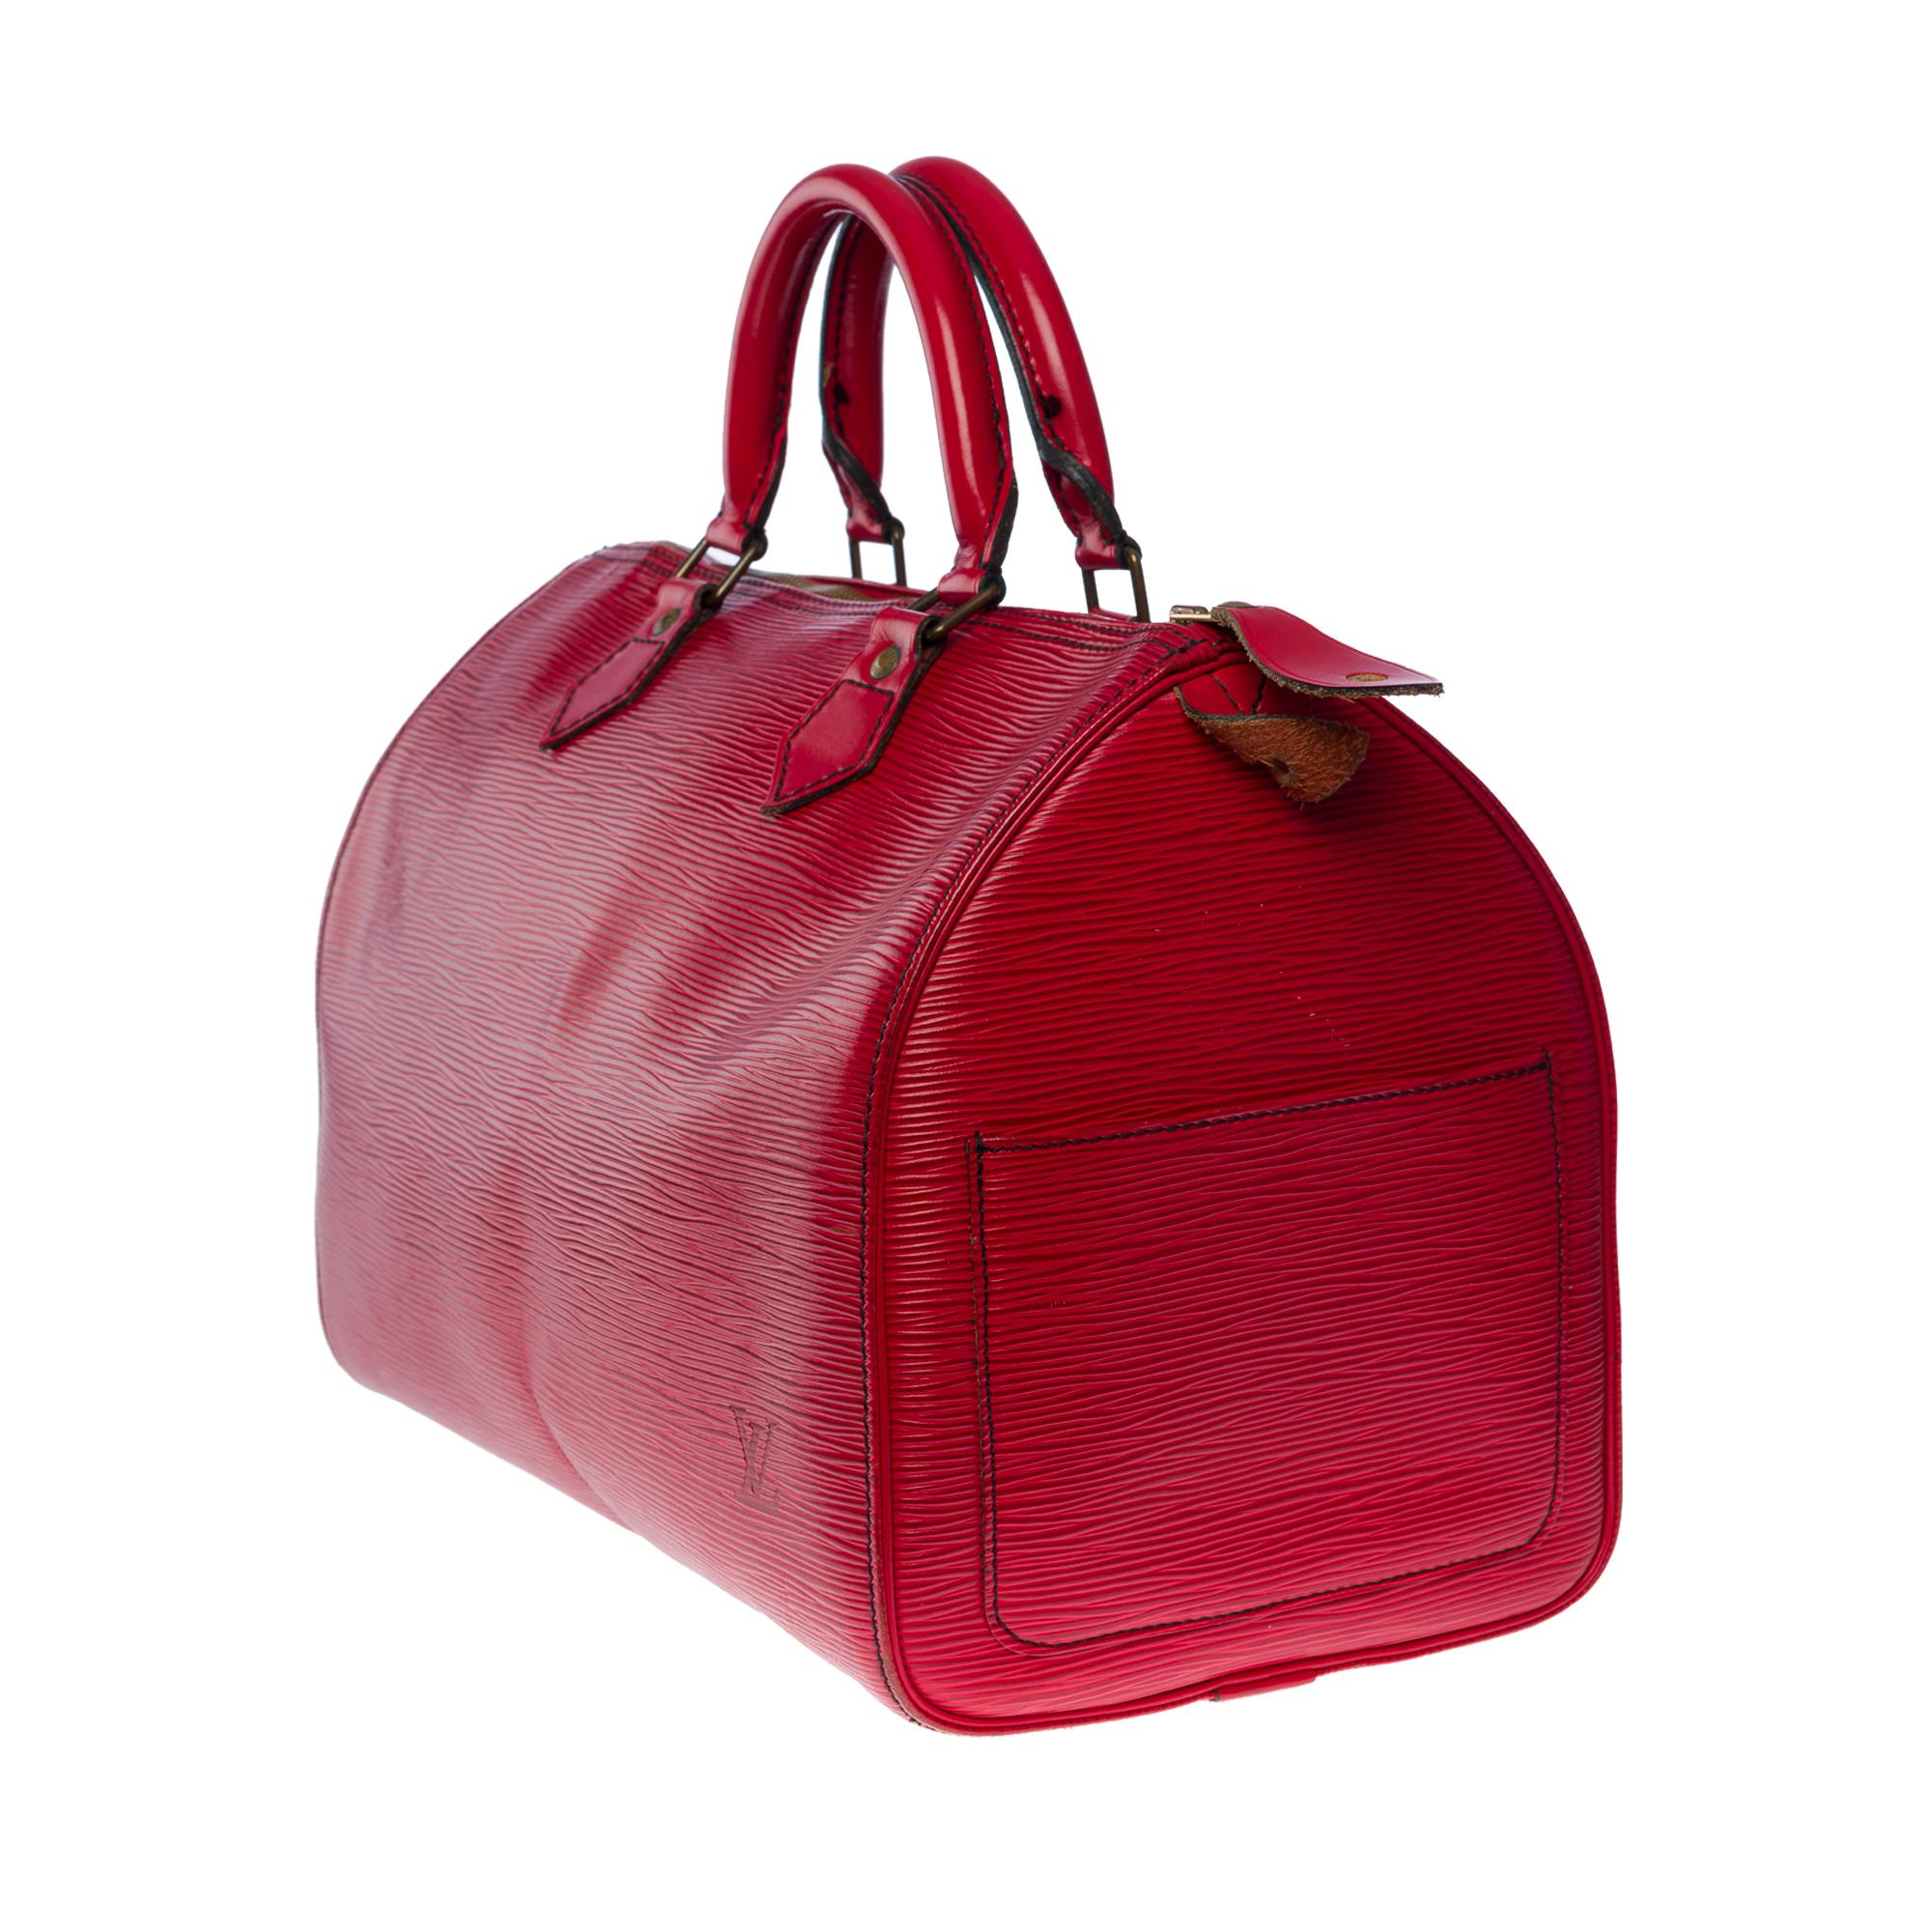 Wunderschöne Louis Vuitton Speedy 30 Handtasche aus rotem epi-Leder und goldenen Beschlägen für Damen oder Herren